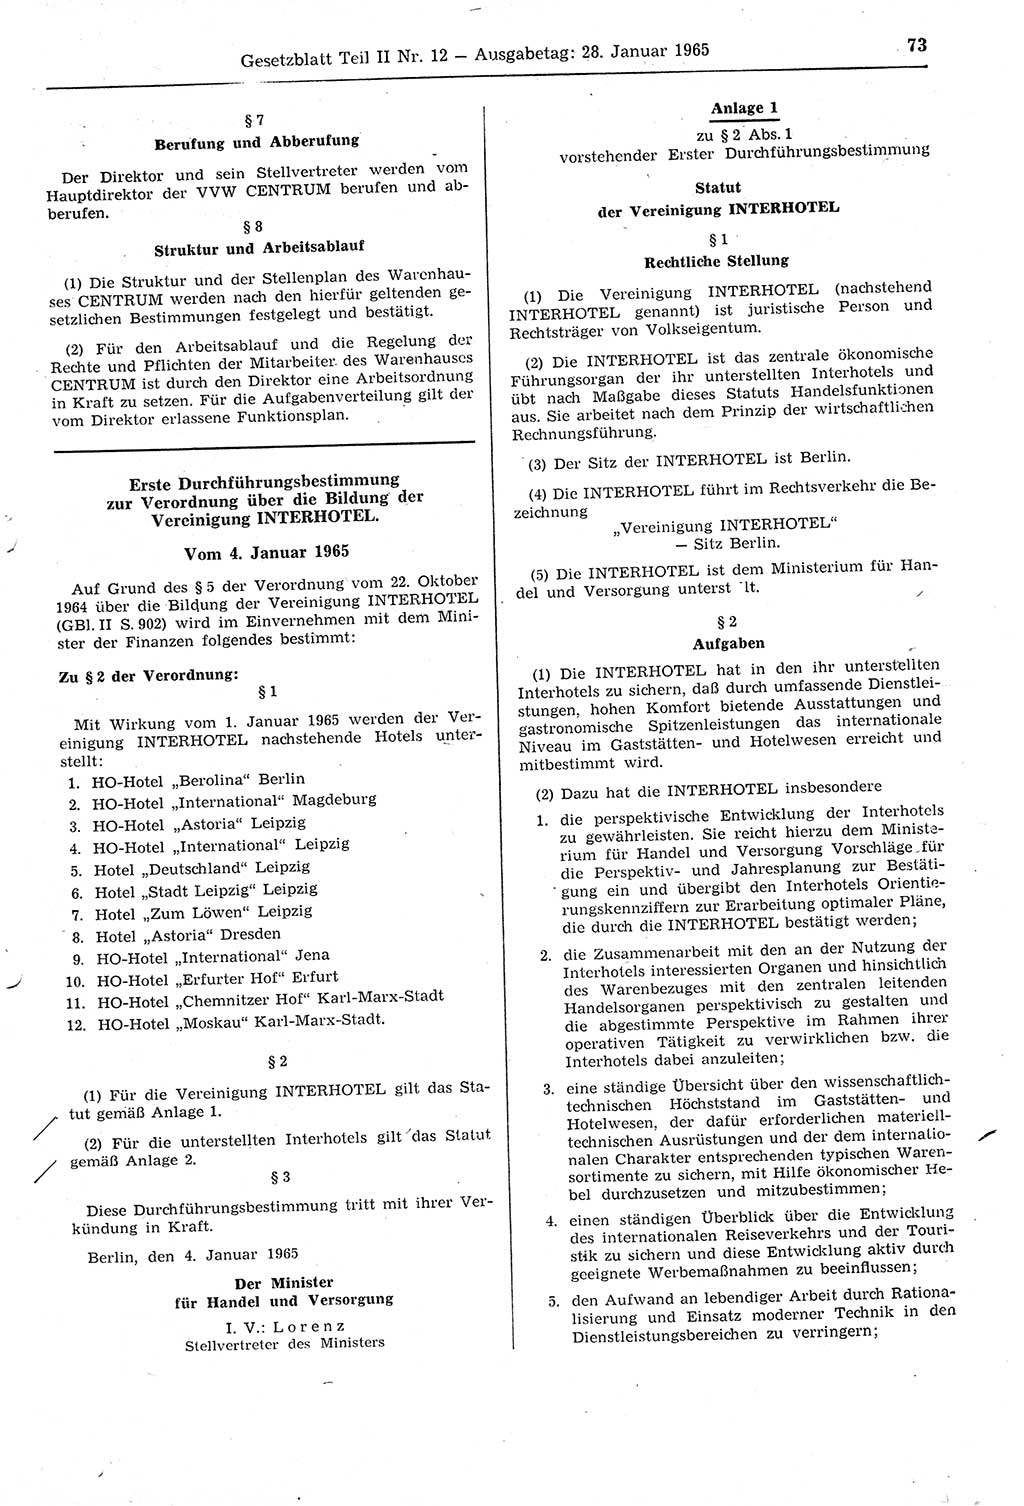 Gesetzblatt (GBl.) der Deutschen Demokratischen Republik (DDR) Teil ⅠⅠ 1965, Seite 73 (GBl. DDR ⅠⅠ 1965, S. 73)